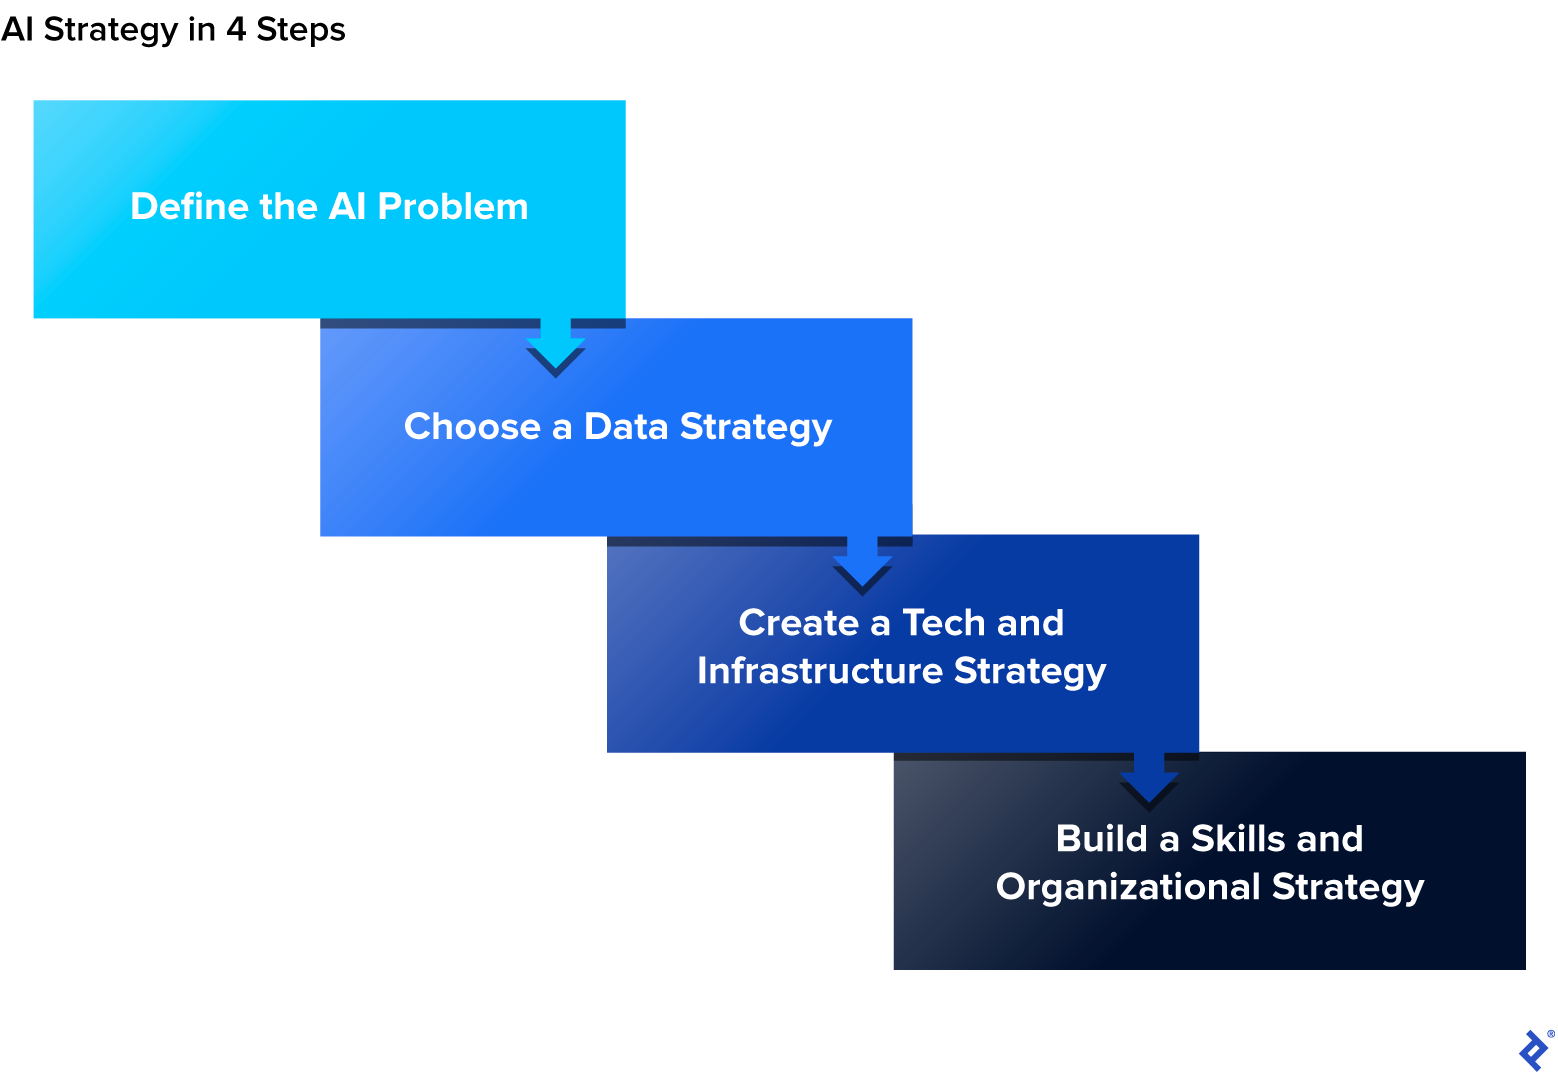 âAI Strategy in 4 Stepsâ begins with âDefine the AI Problemâ and ends with âBuild a Skills and Organizational Strategy.â